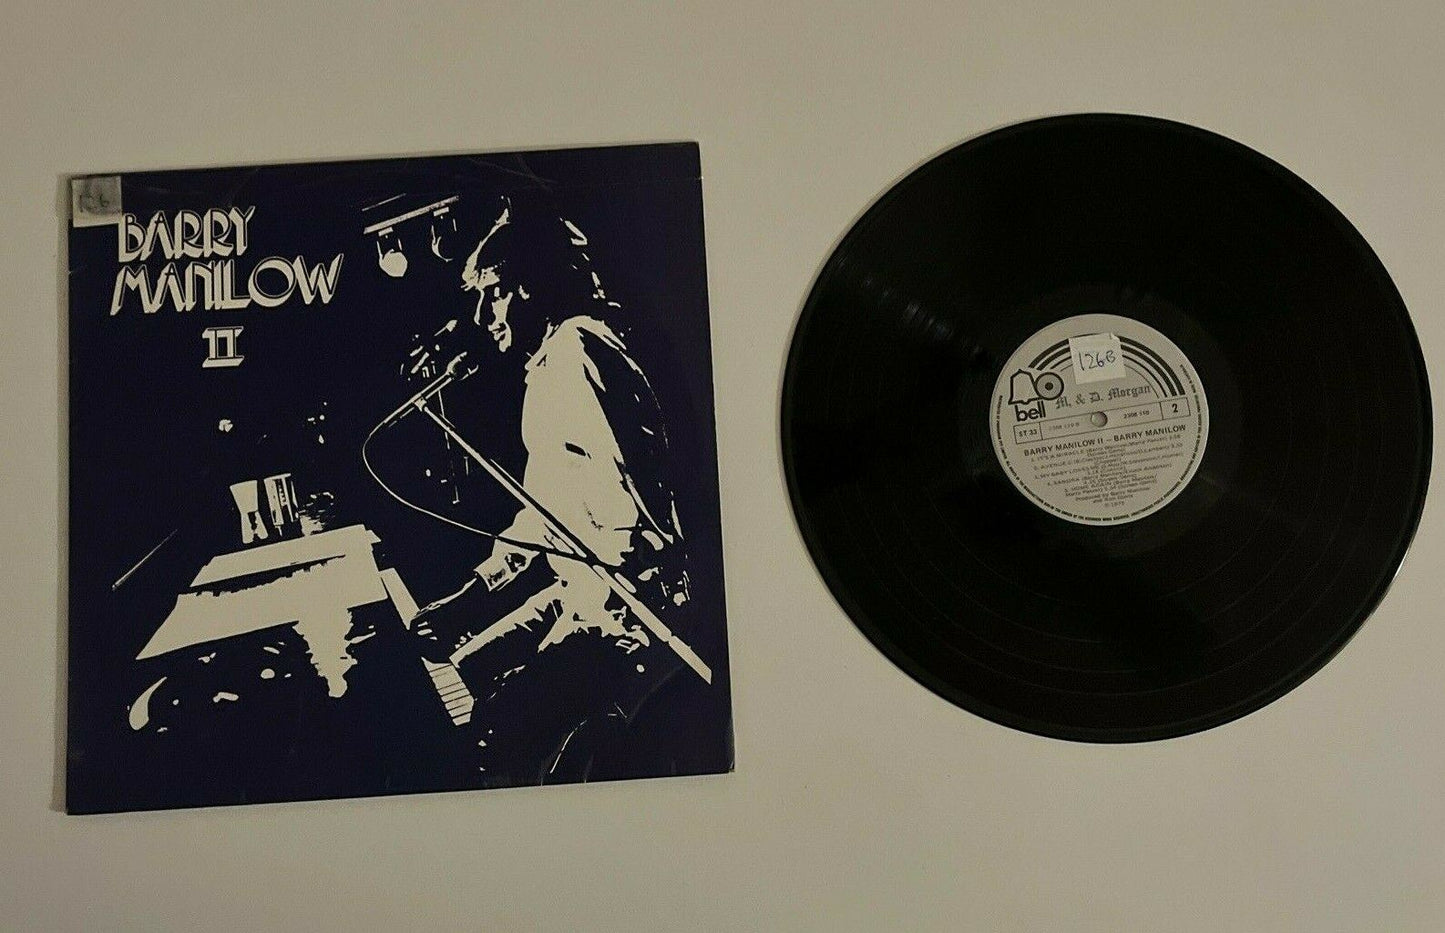 Barry Manilow II Vinyl 1974